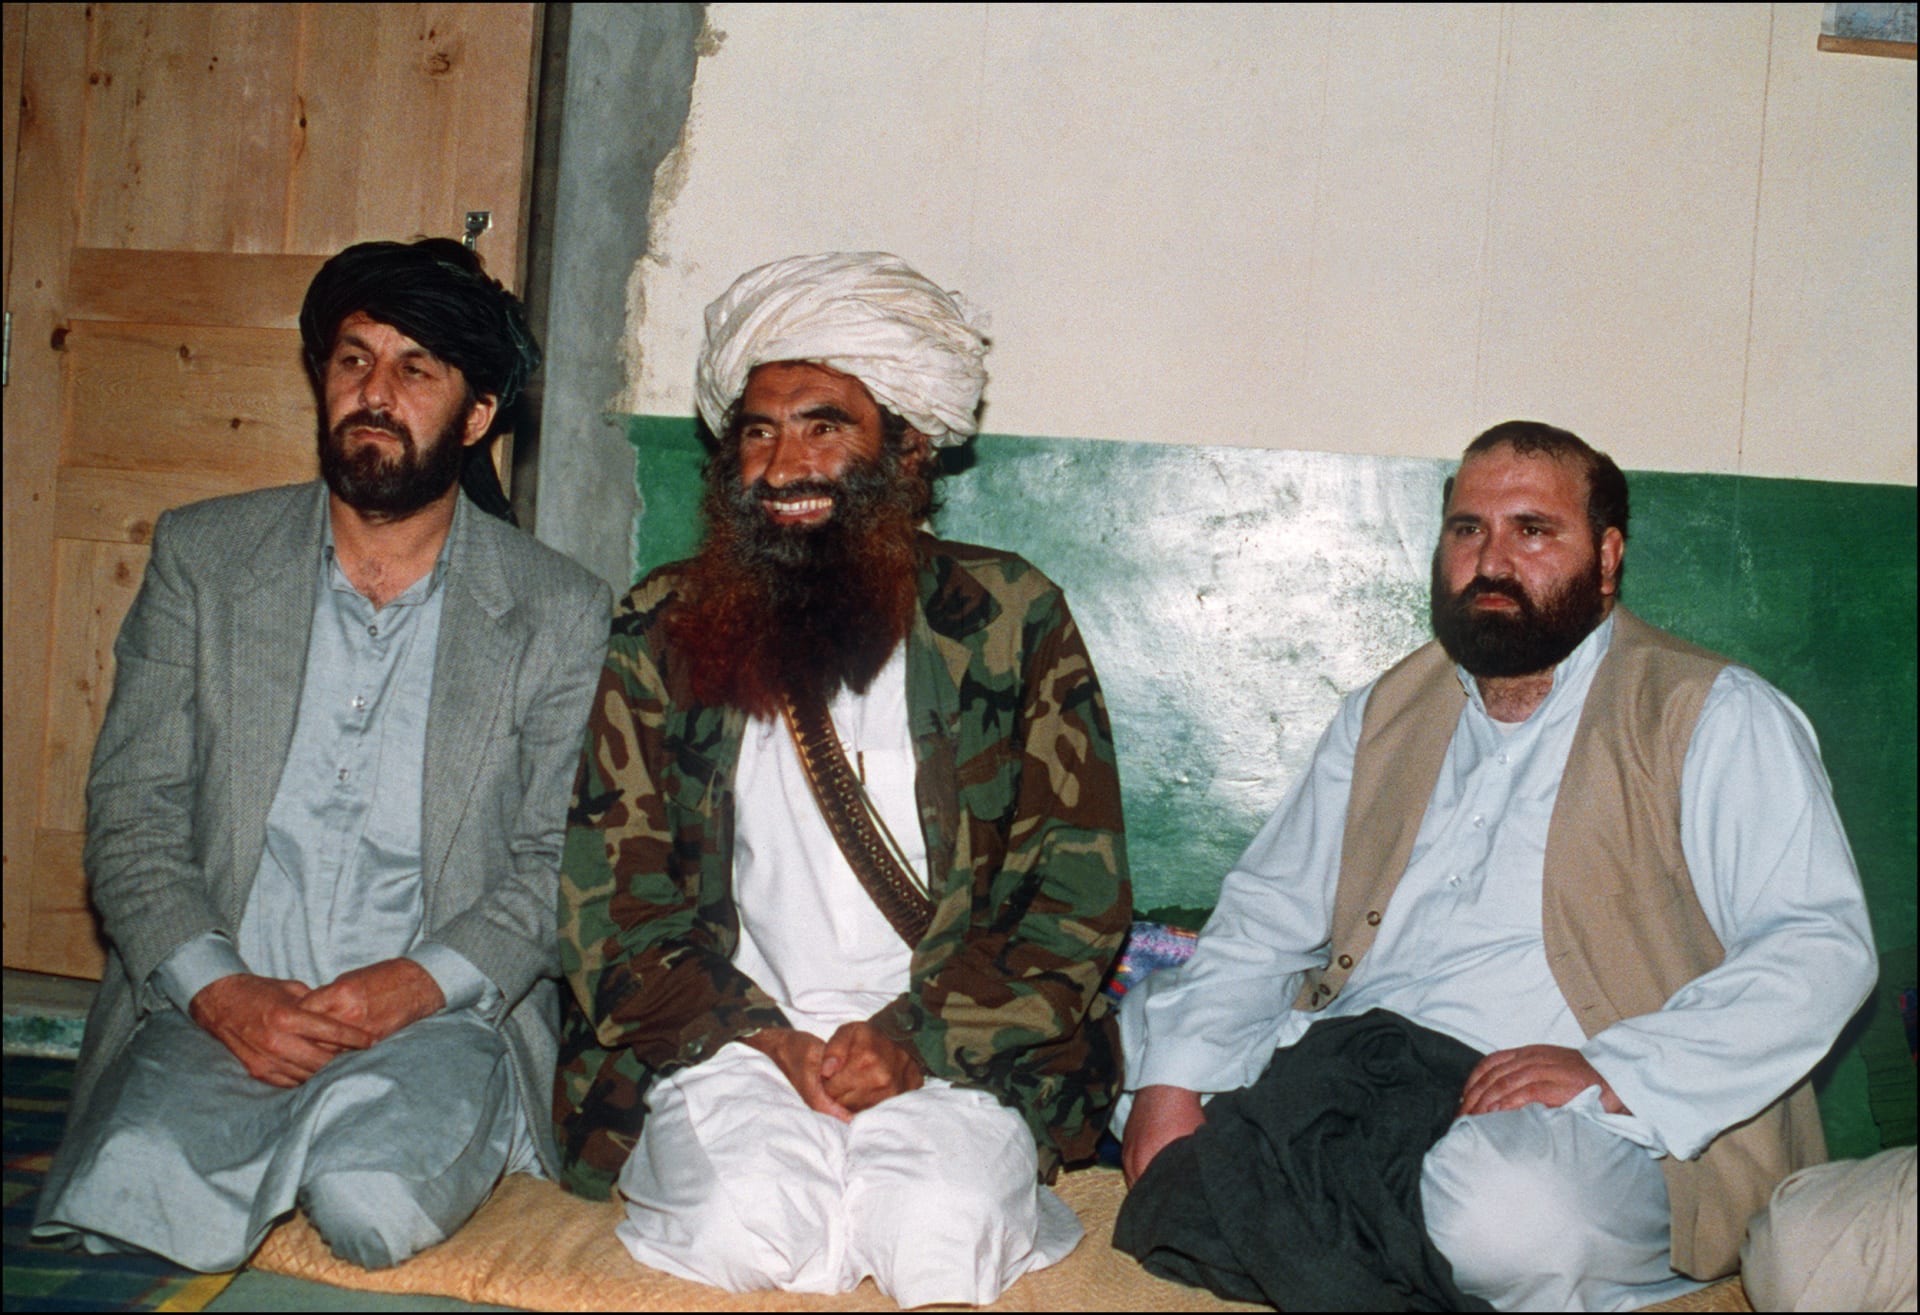  طالبان تعلن وفاة زعيم شبكة "حقاني" المسؤولة عن عدة هجمات بأمريكا